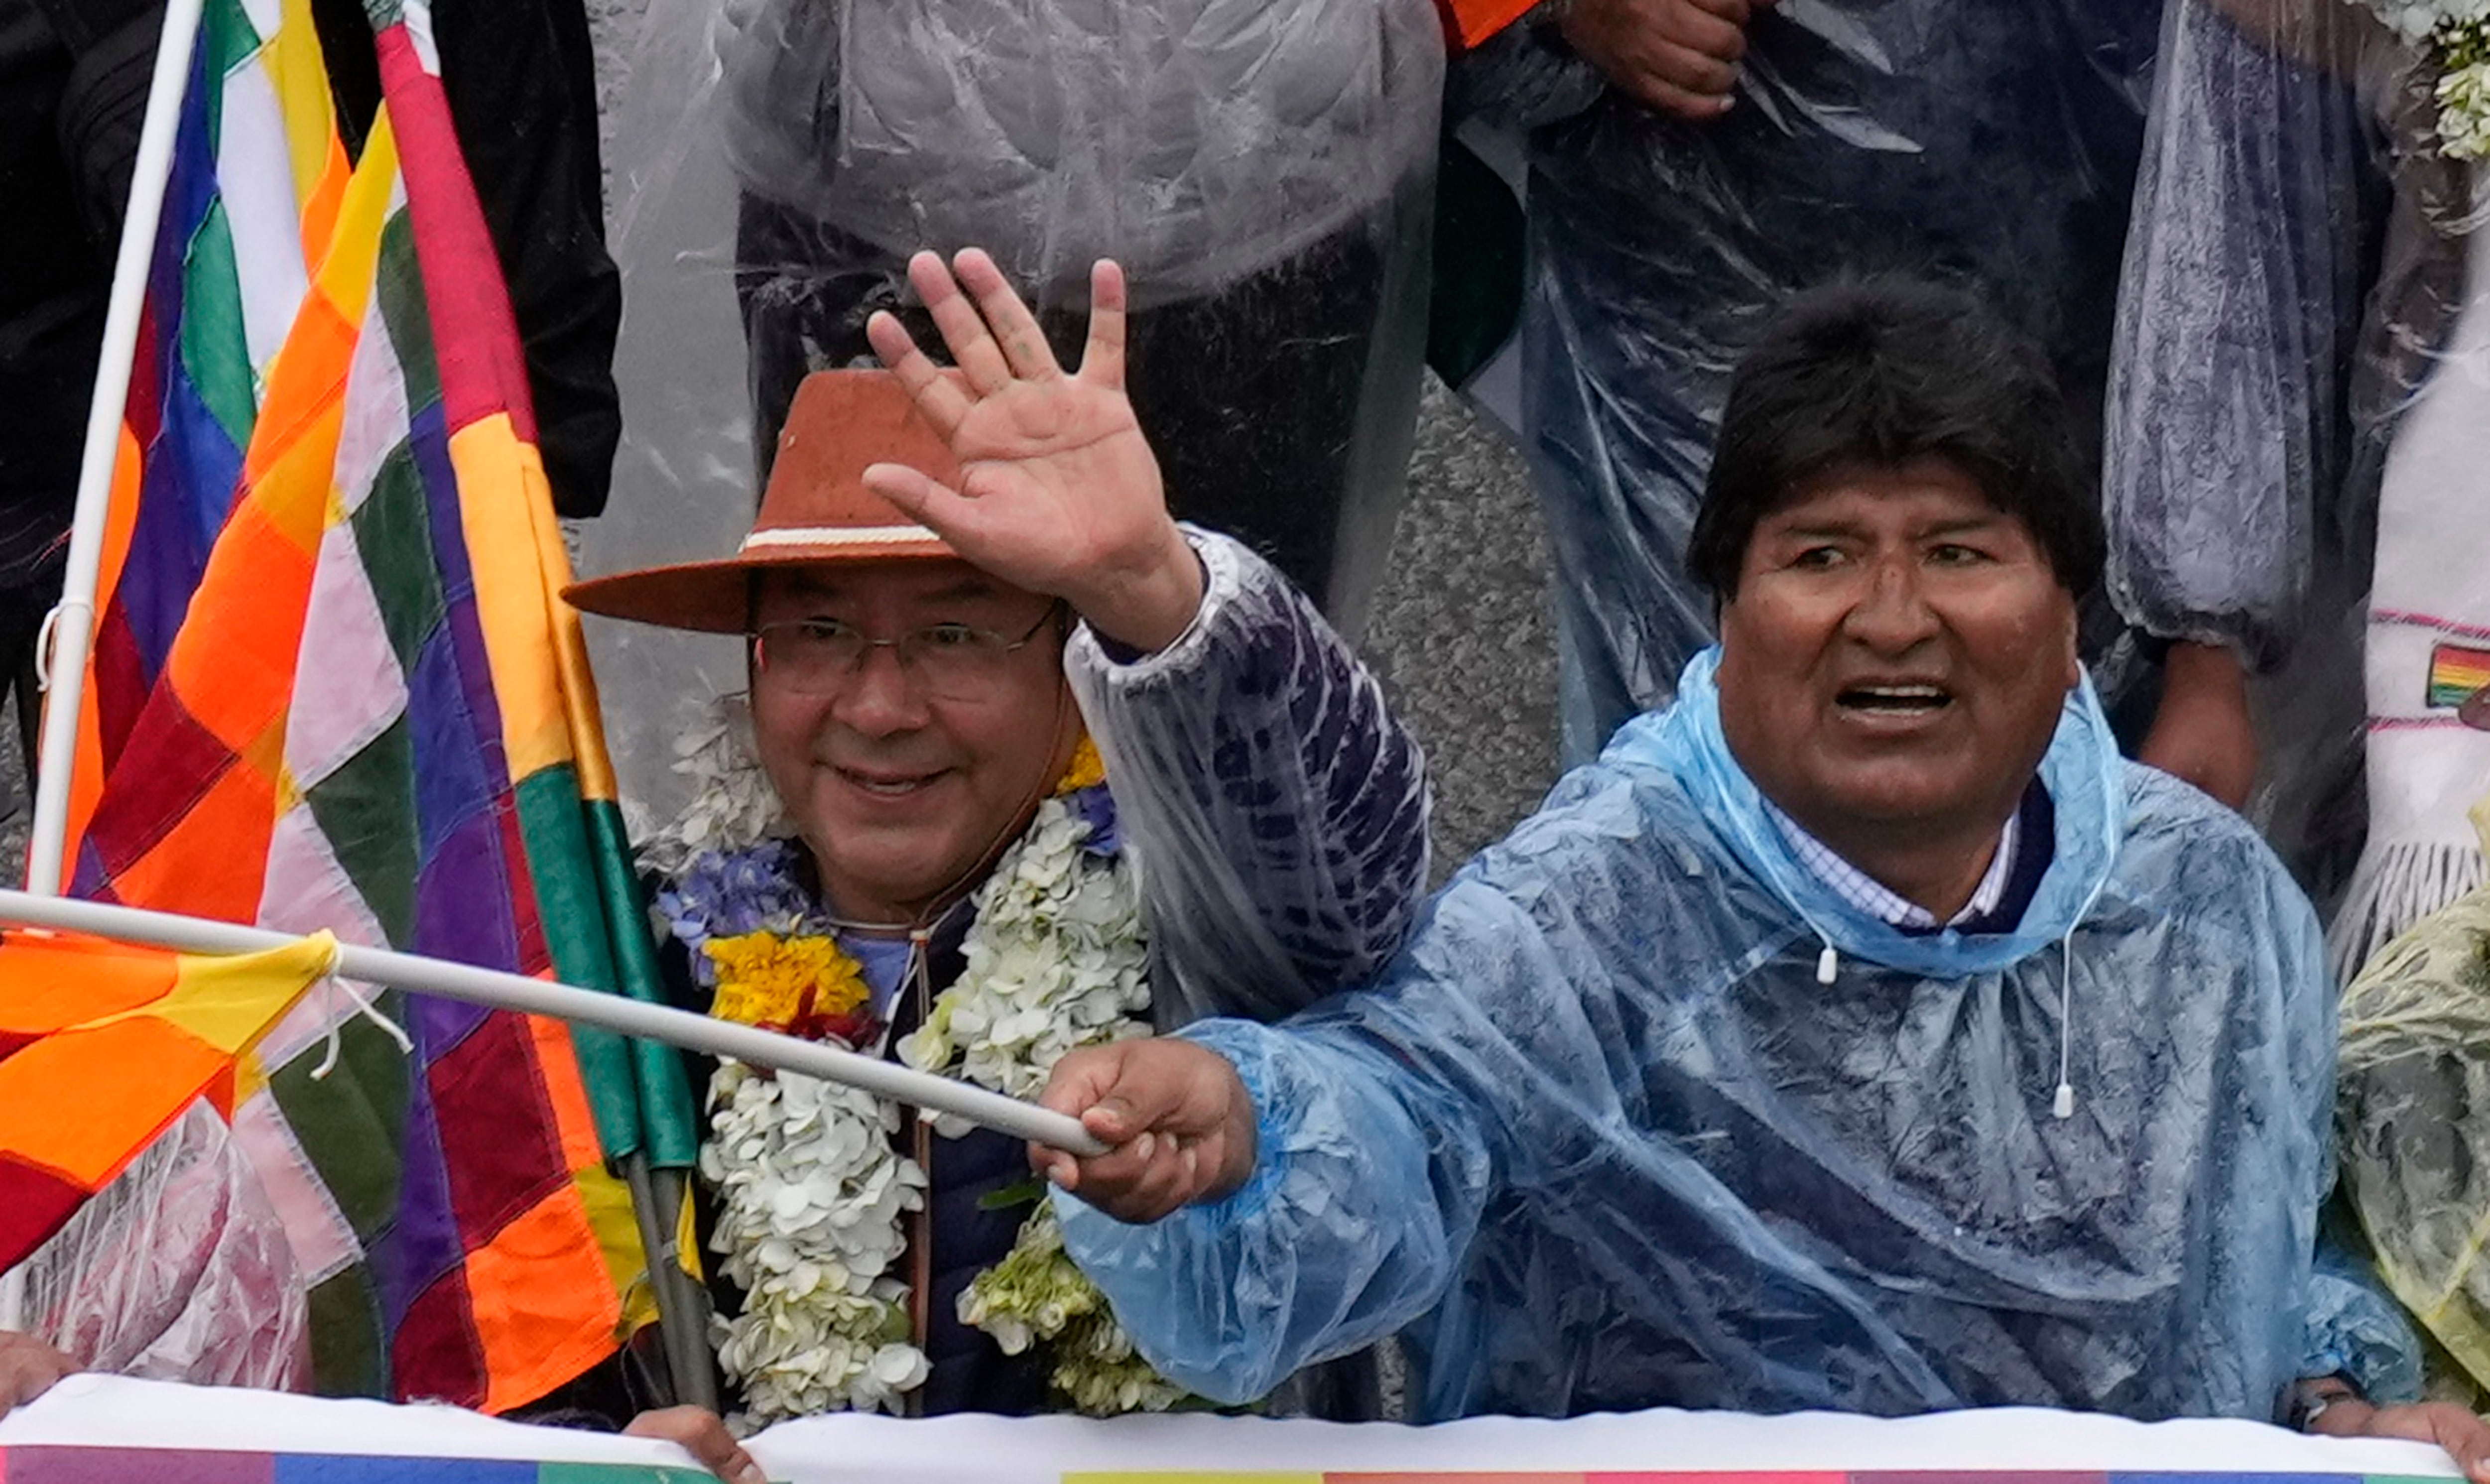 Luis Arce camina con el ex mandatario Evo Morales durante la denominada "Marcha por la patria" en El Alto, Bolivia, el 29 de noviembre de 2021 (AP)